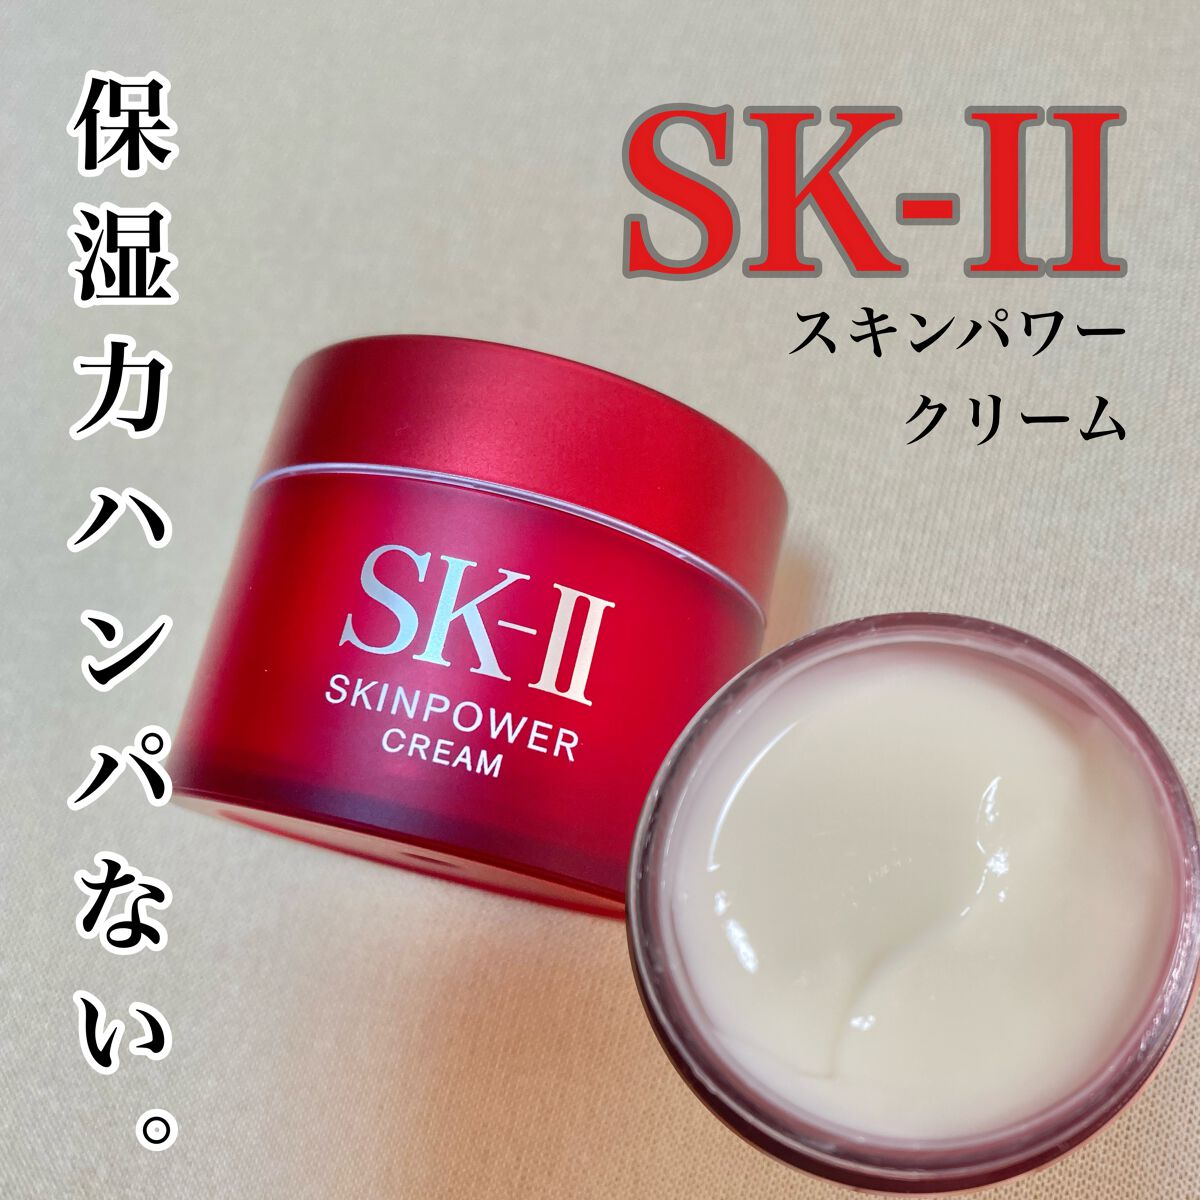 SK-II スキンパワークリーム